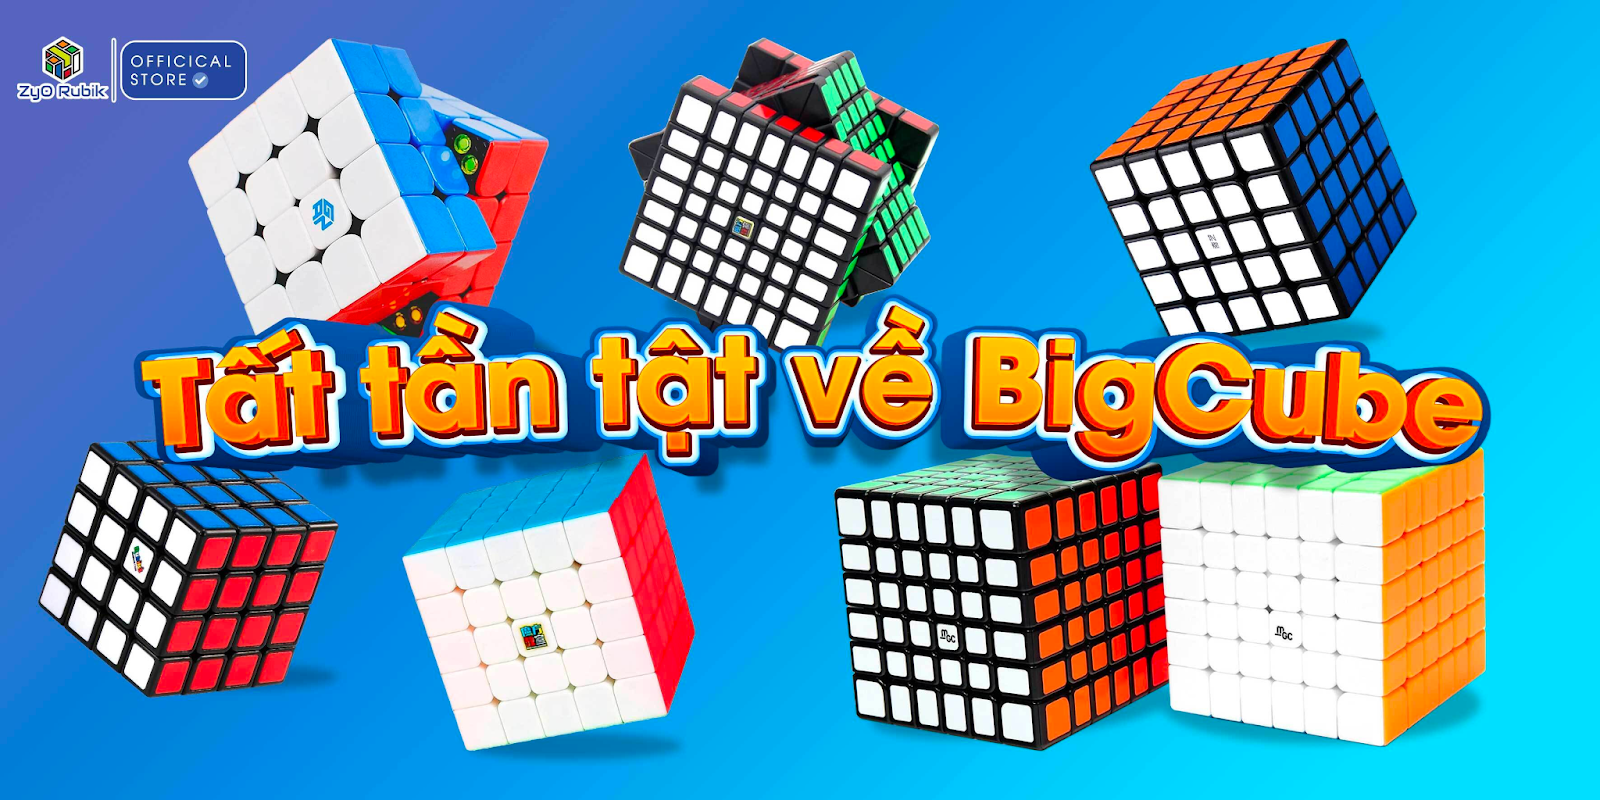 Khám phá Thế Giới Của Big Cube: Loại Big Cube nào được sử dụng trong thi đấu?